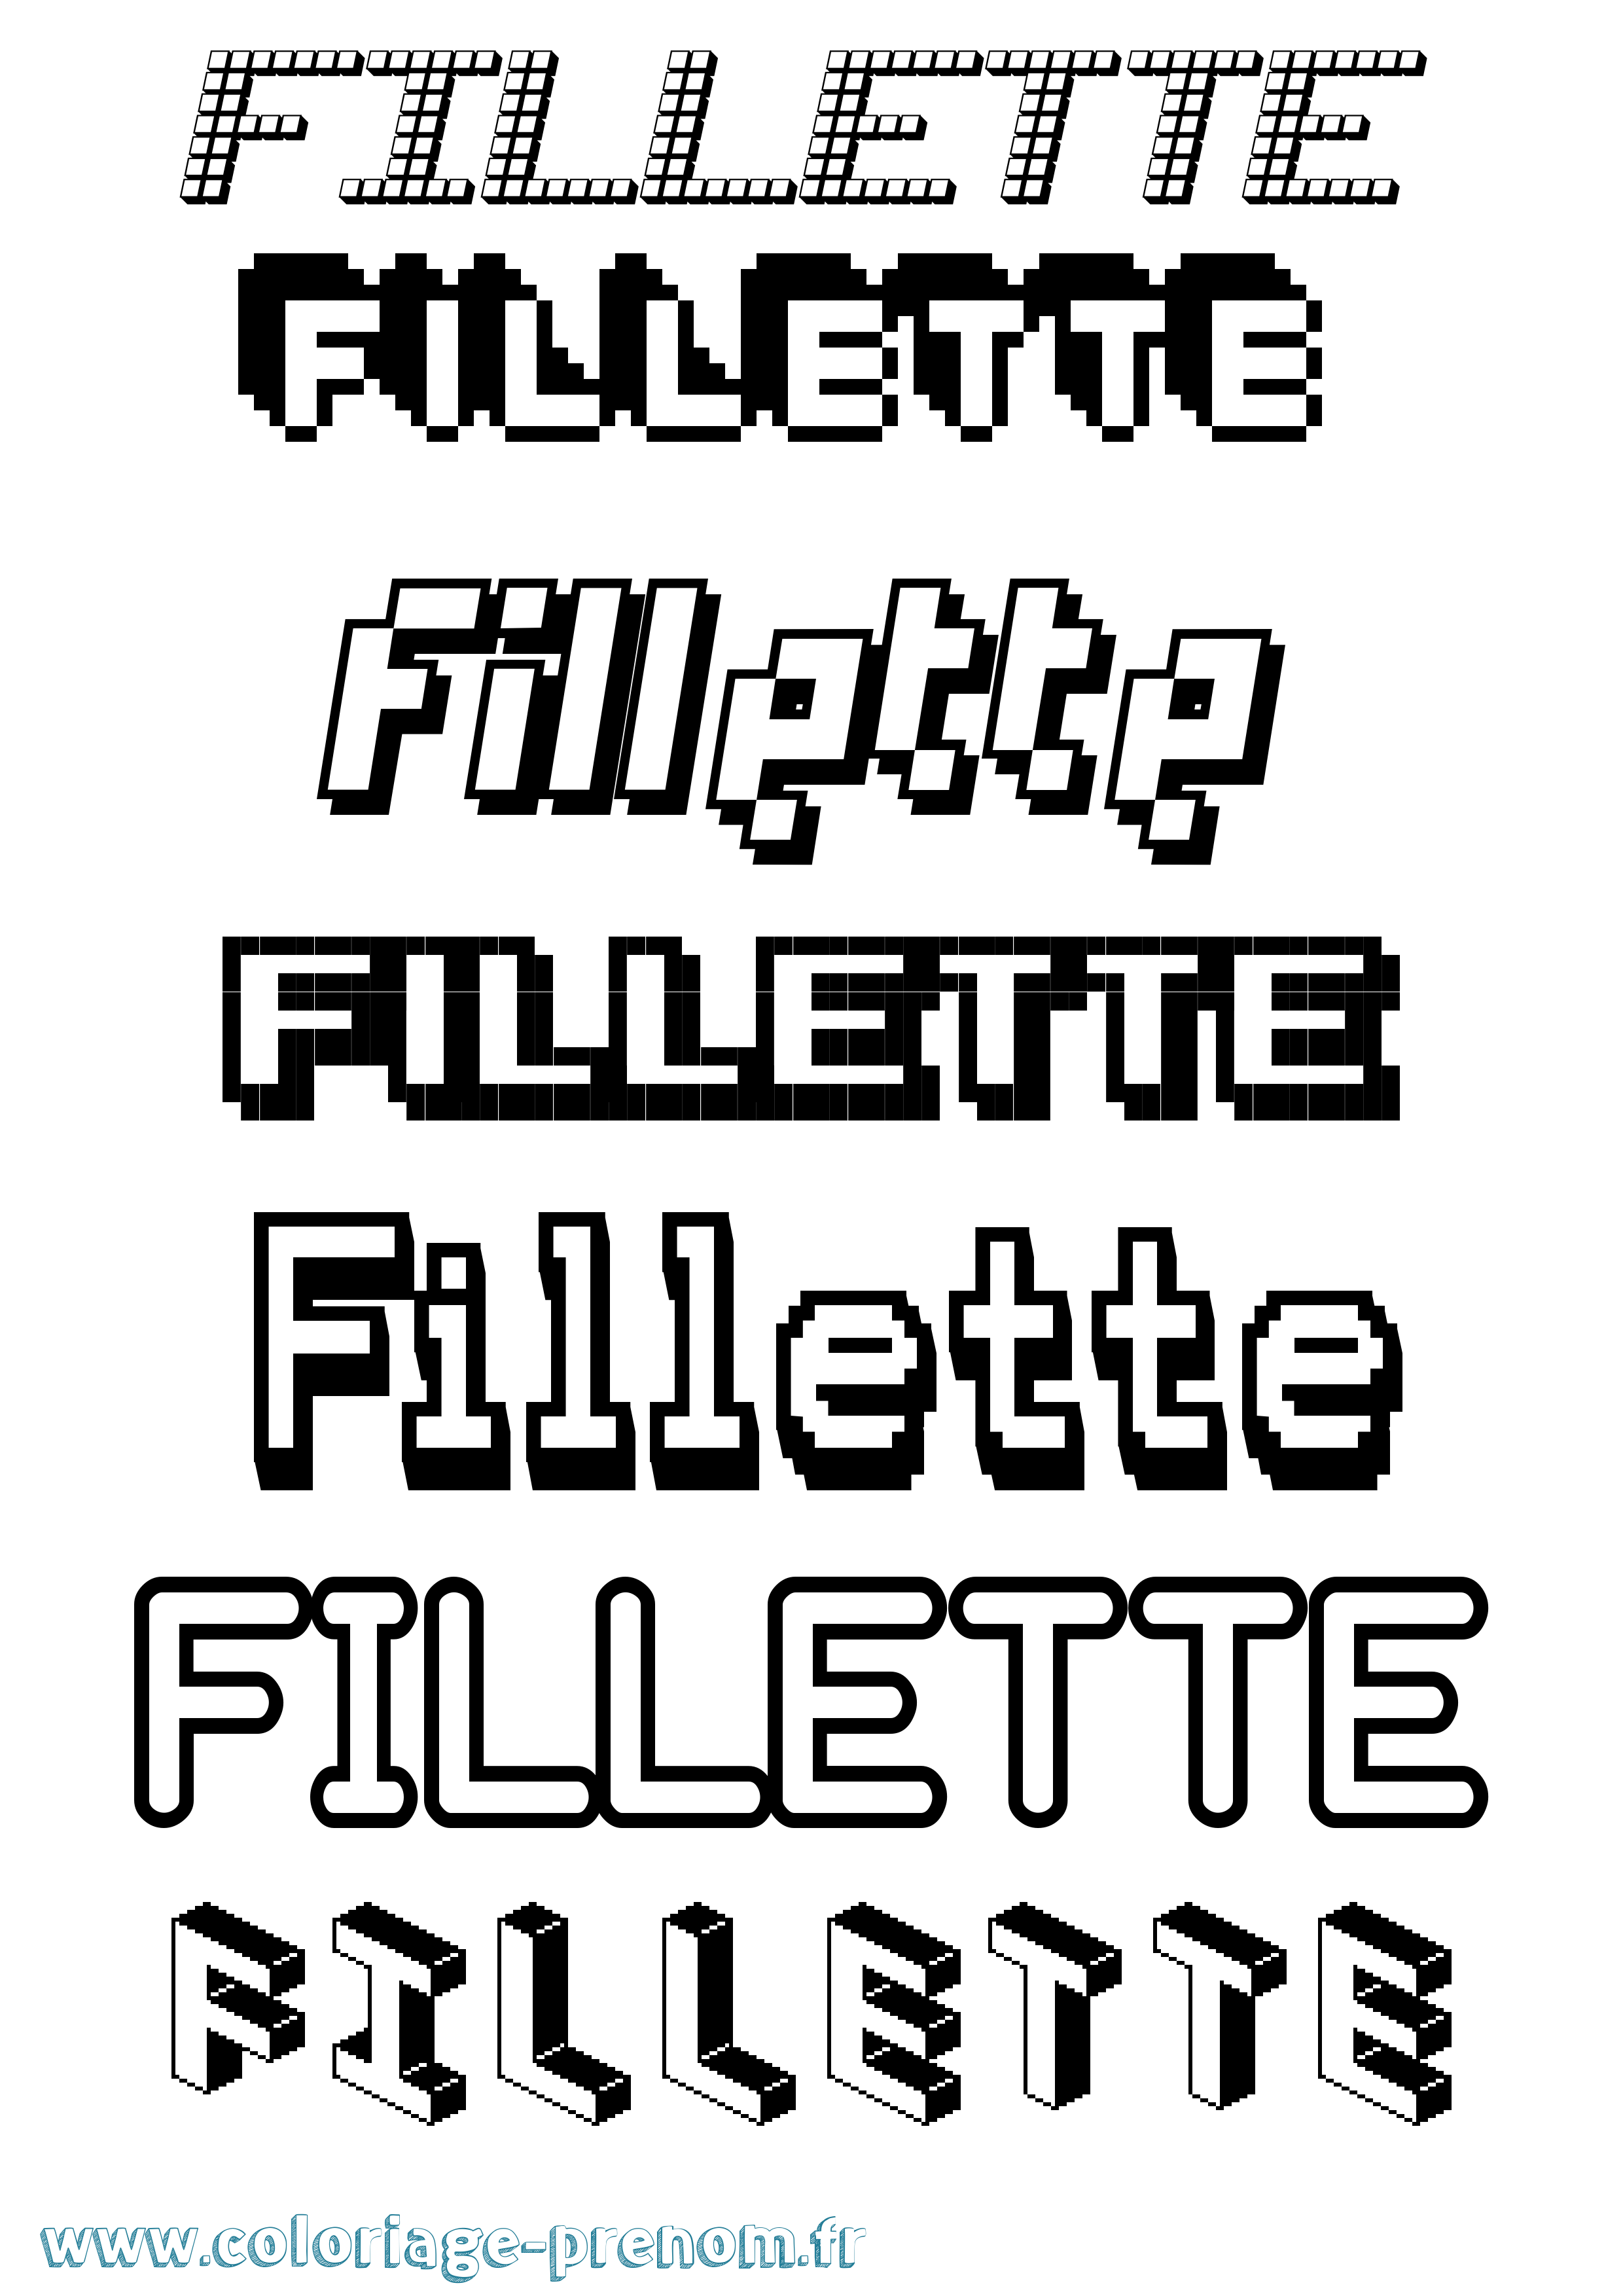 Coloriage prénom Fillette Pixel